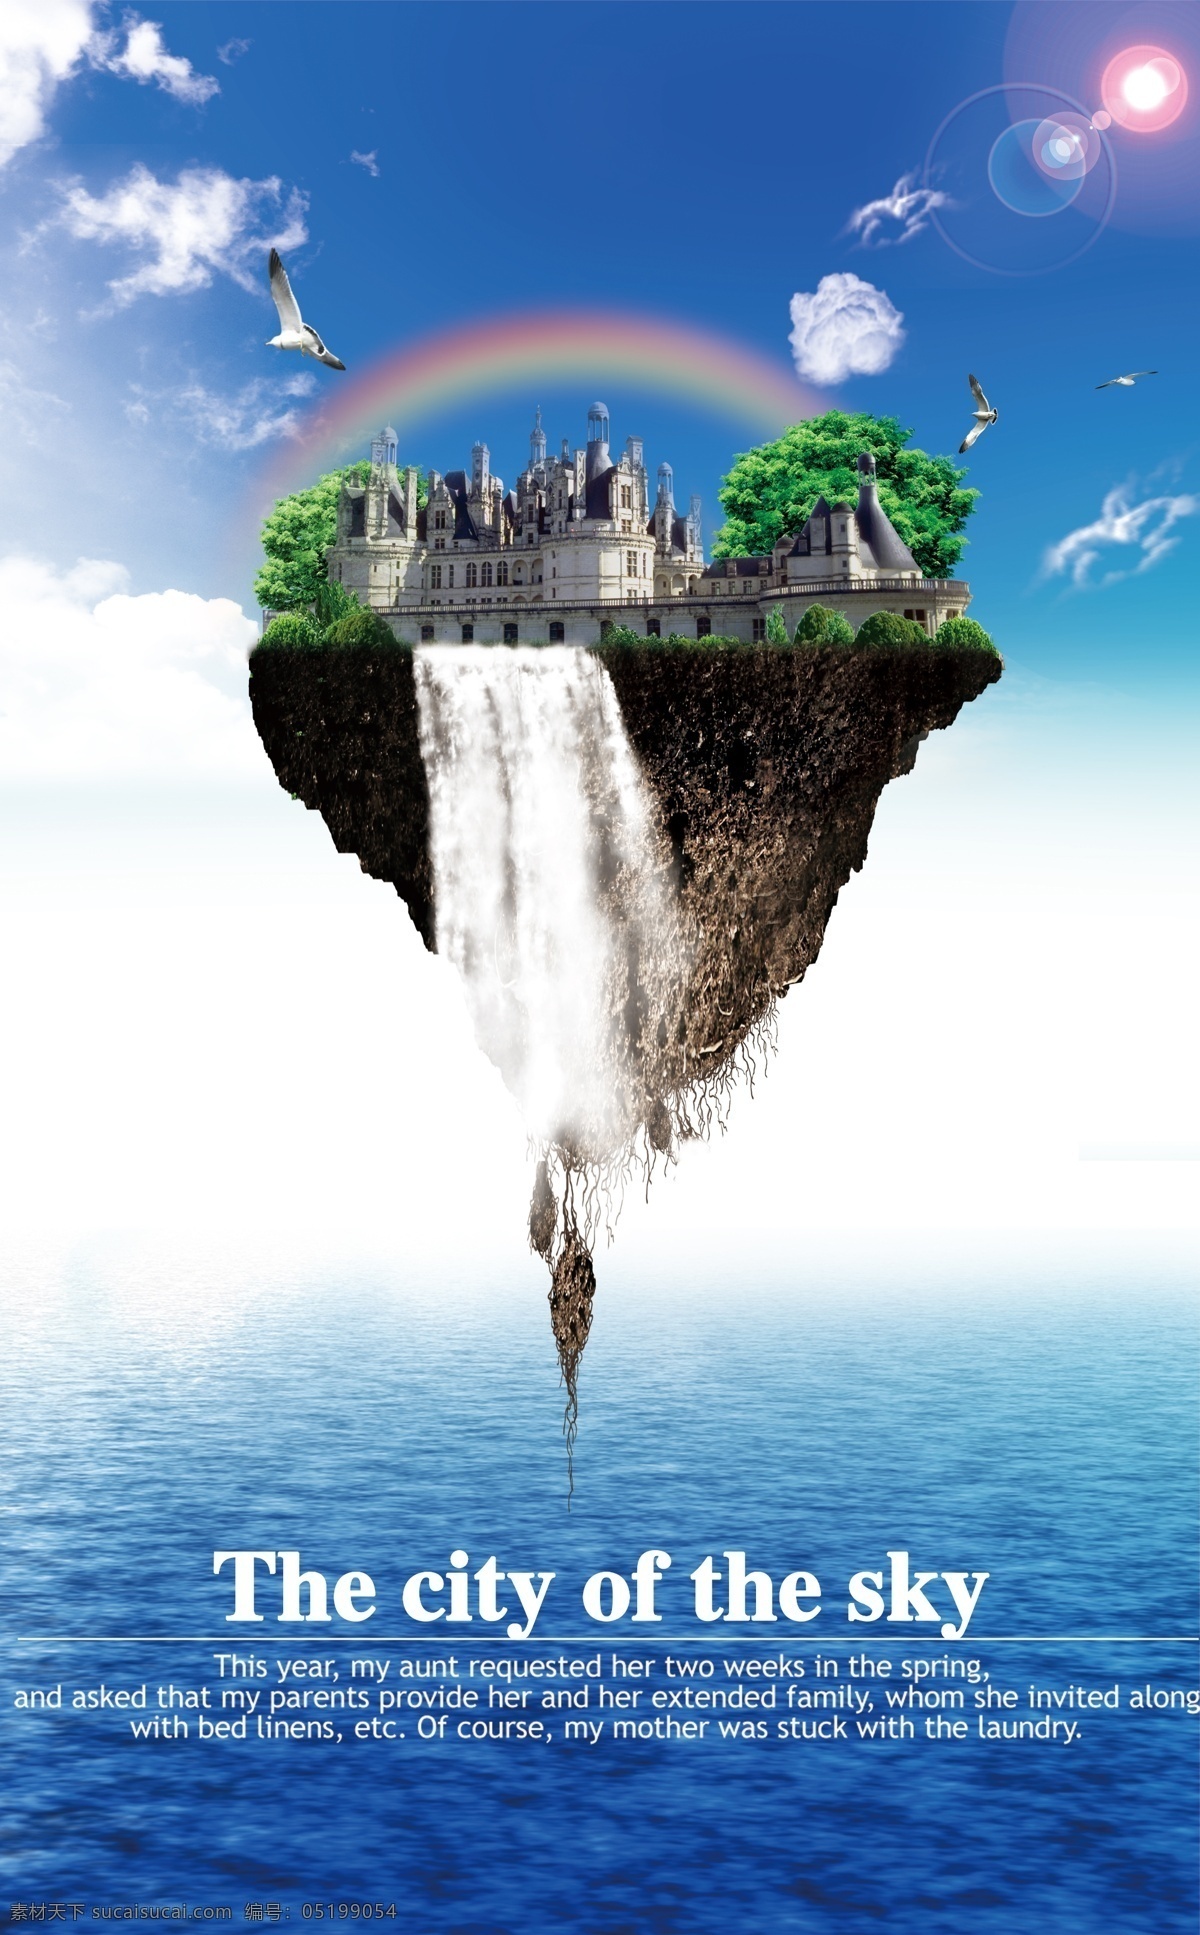 天空之城 蓝天 白云 大海 浮岛 瀑布 彩虹 城堡 海面 树木 广告设计模板 源文件